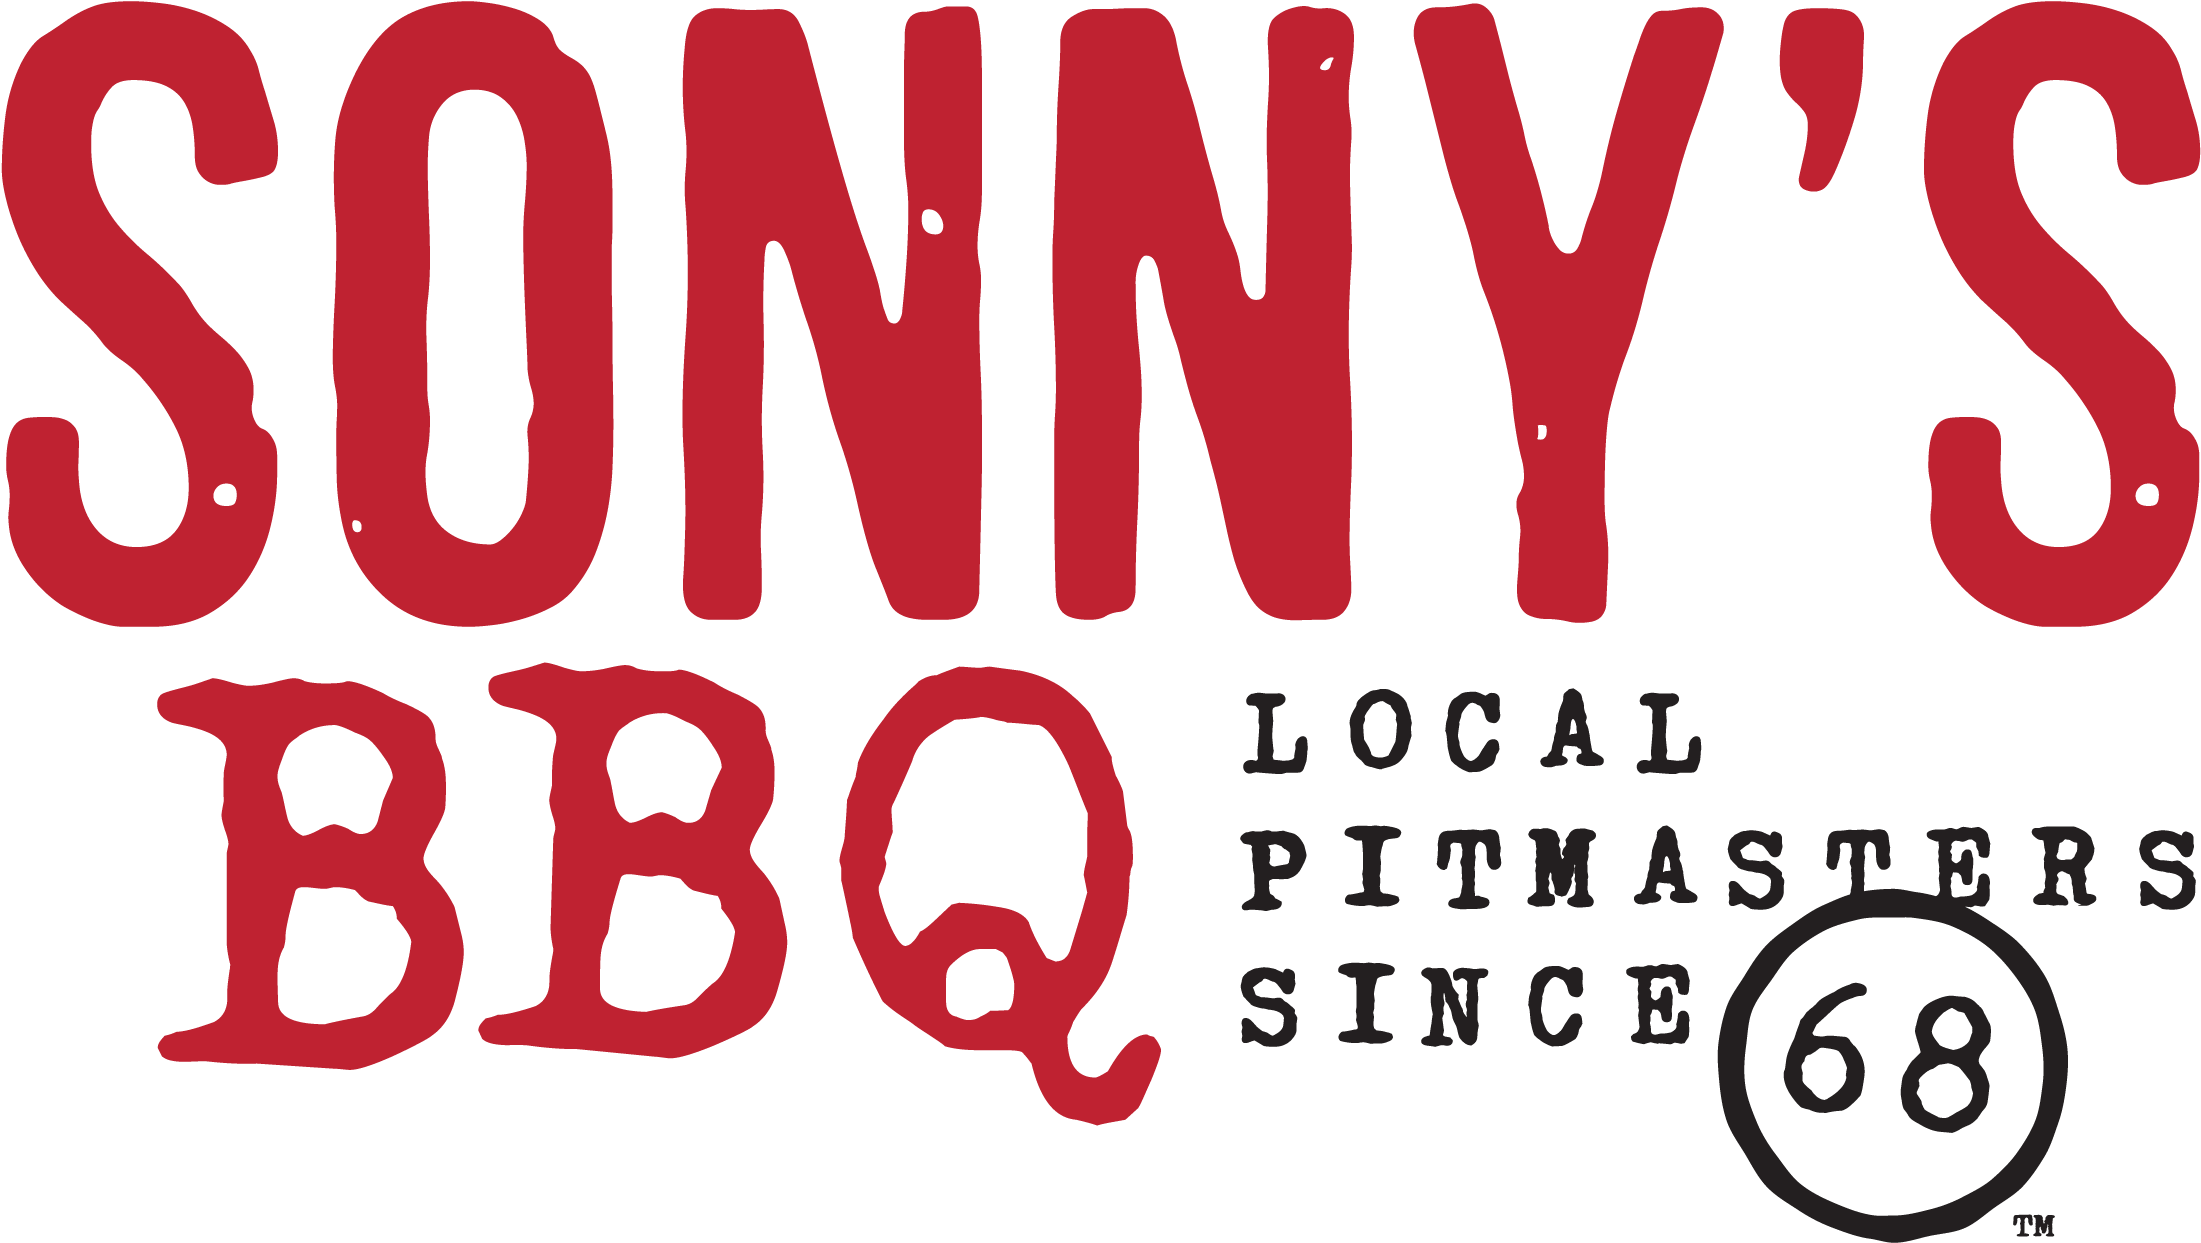 Sonny's Bbq - Sonnys Bbq Sauce, Sizzlin' - 20 Oz (2550x1500)